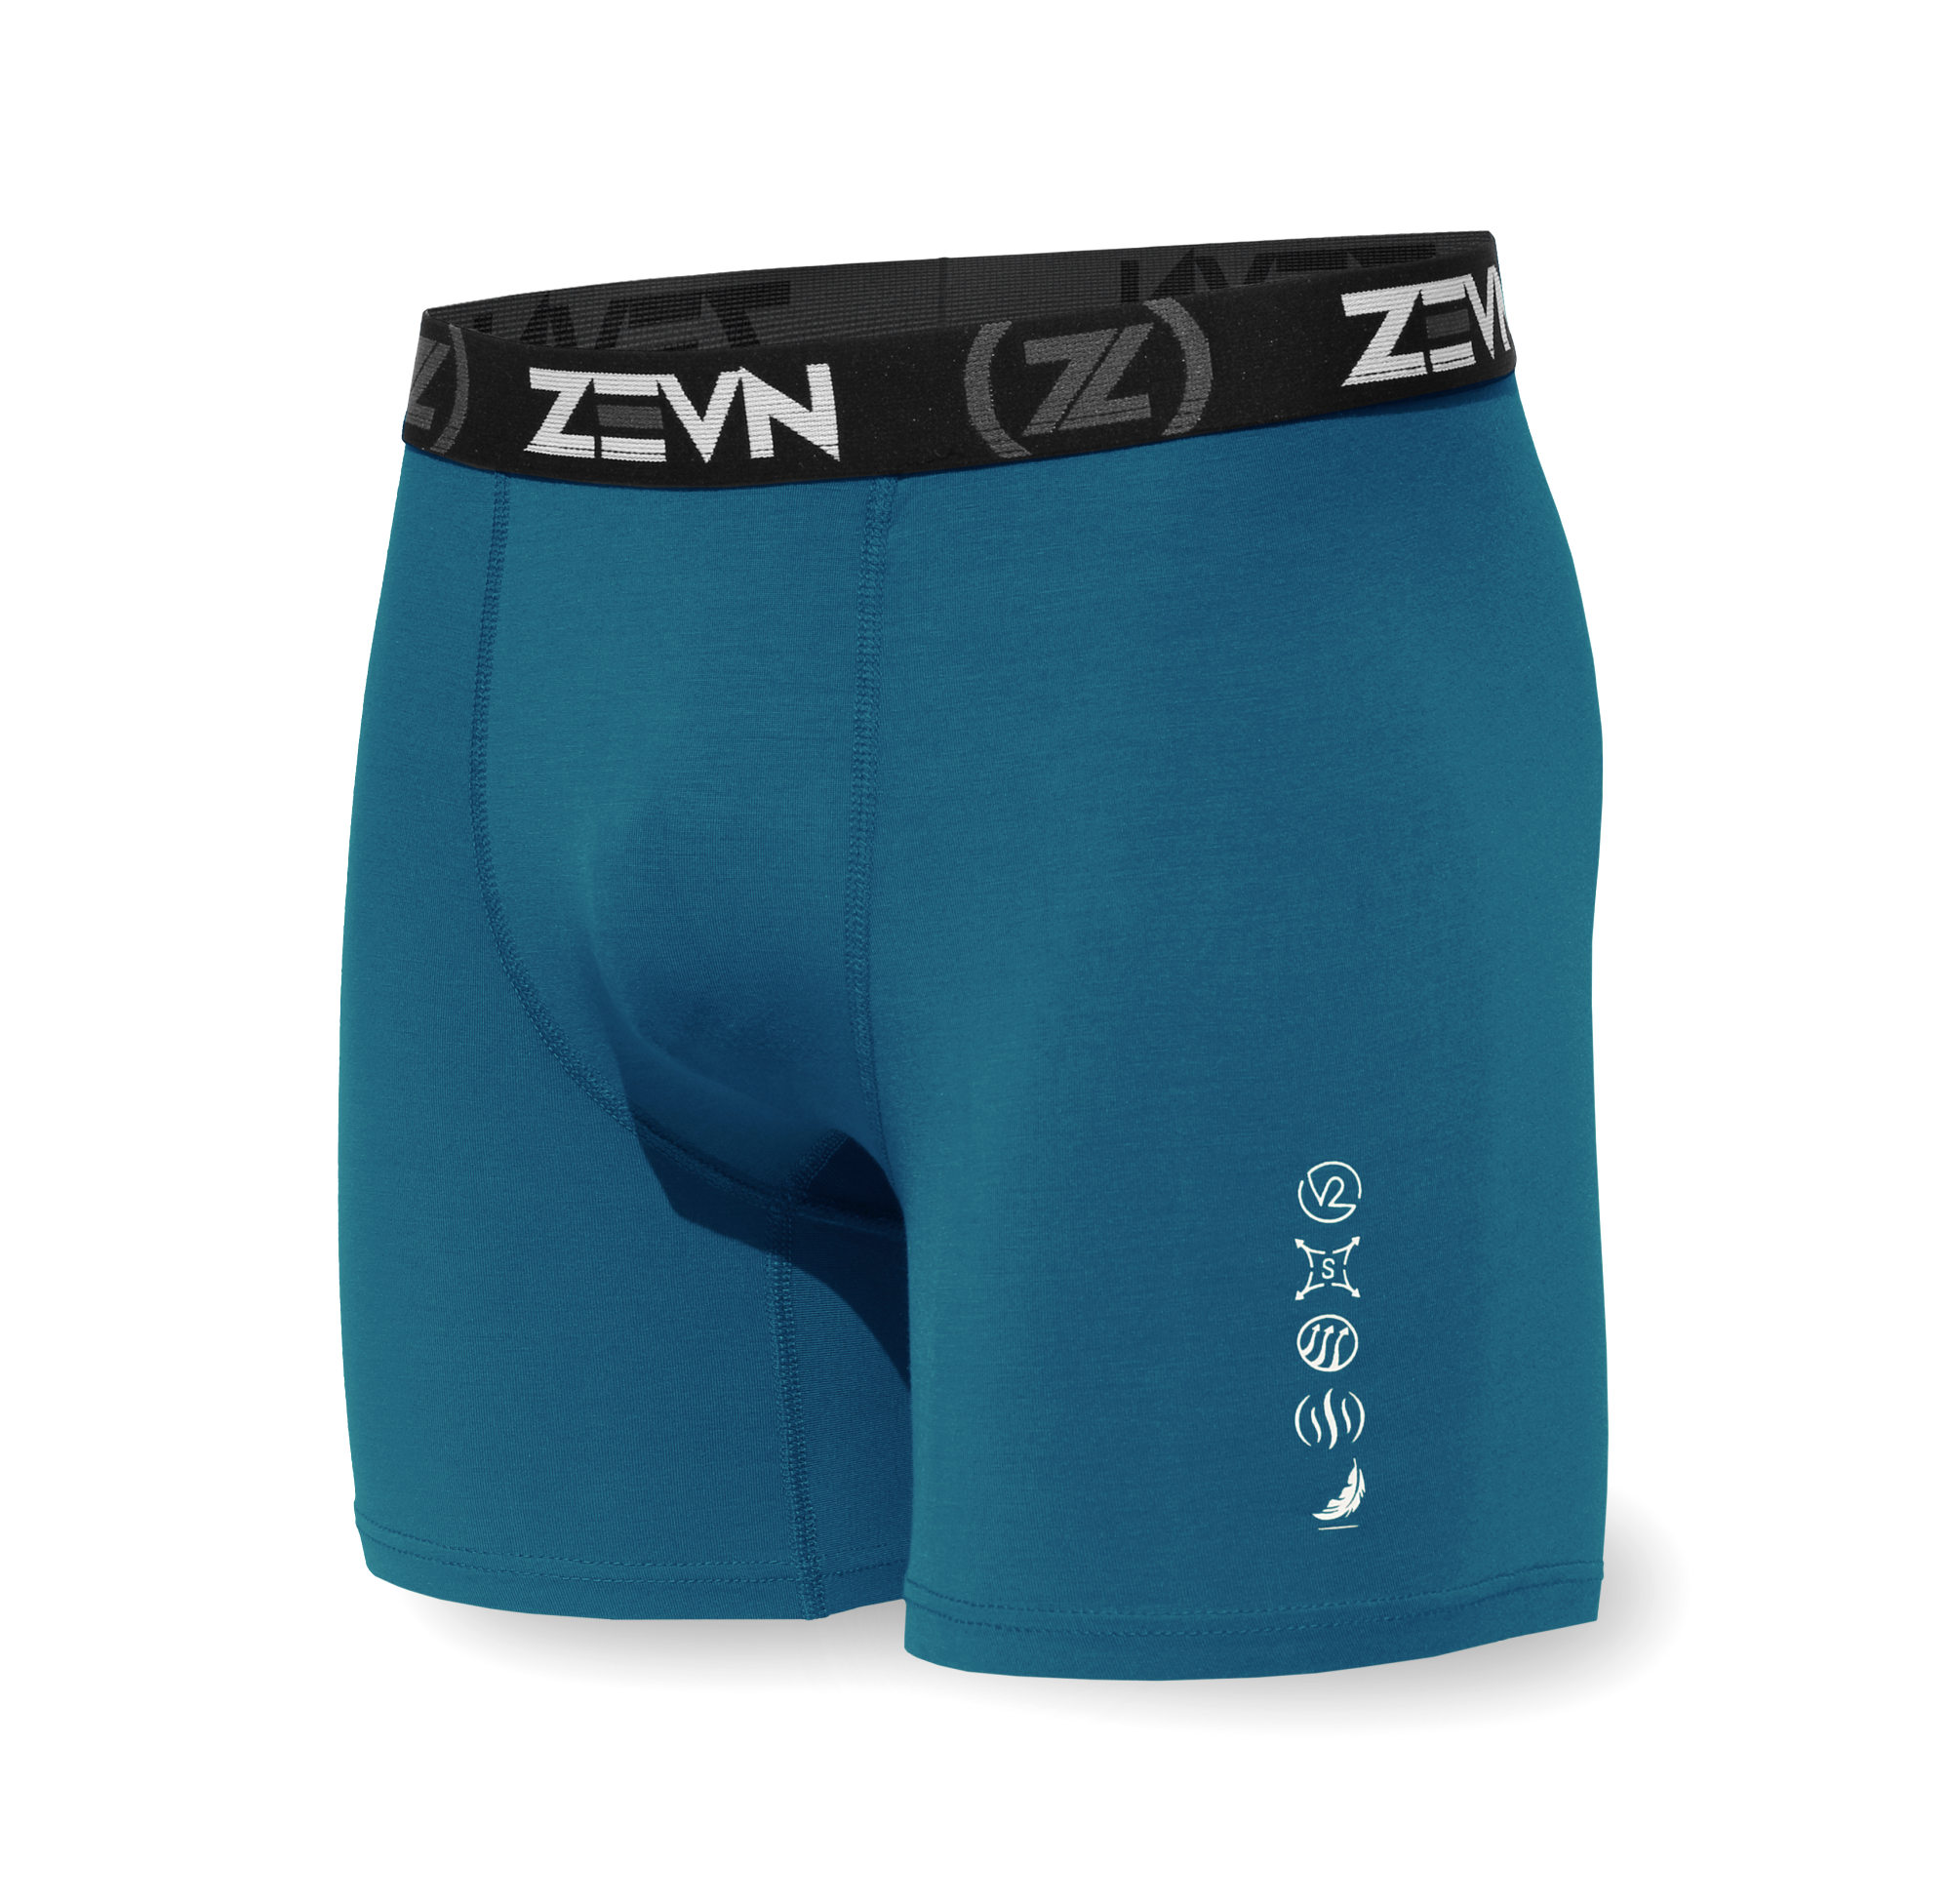 Zevn Women's Performance Underwear - Women's Wet & Dry Sports